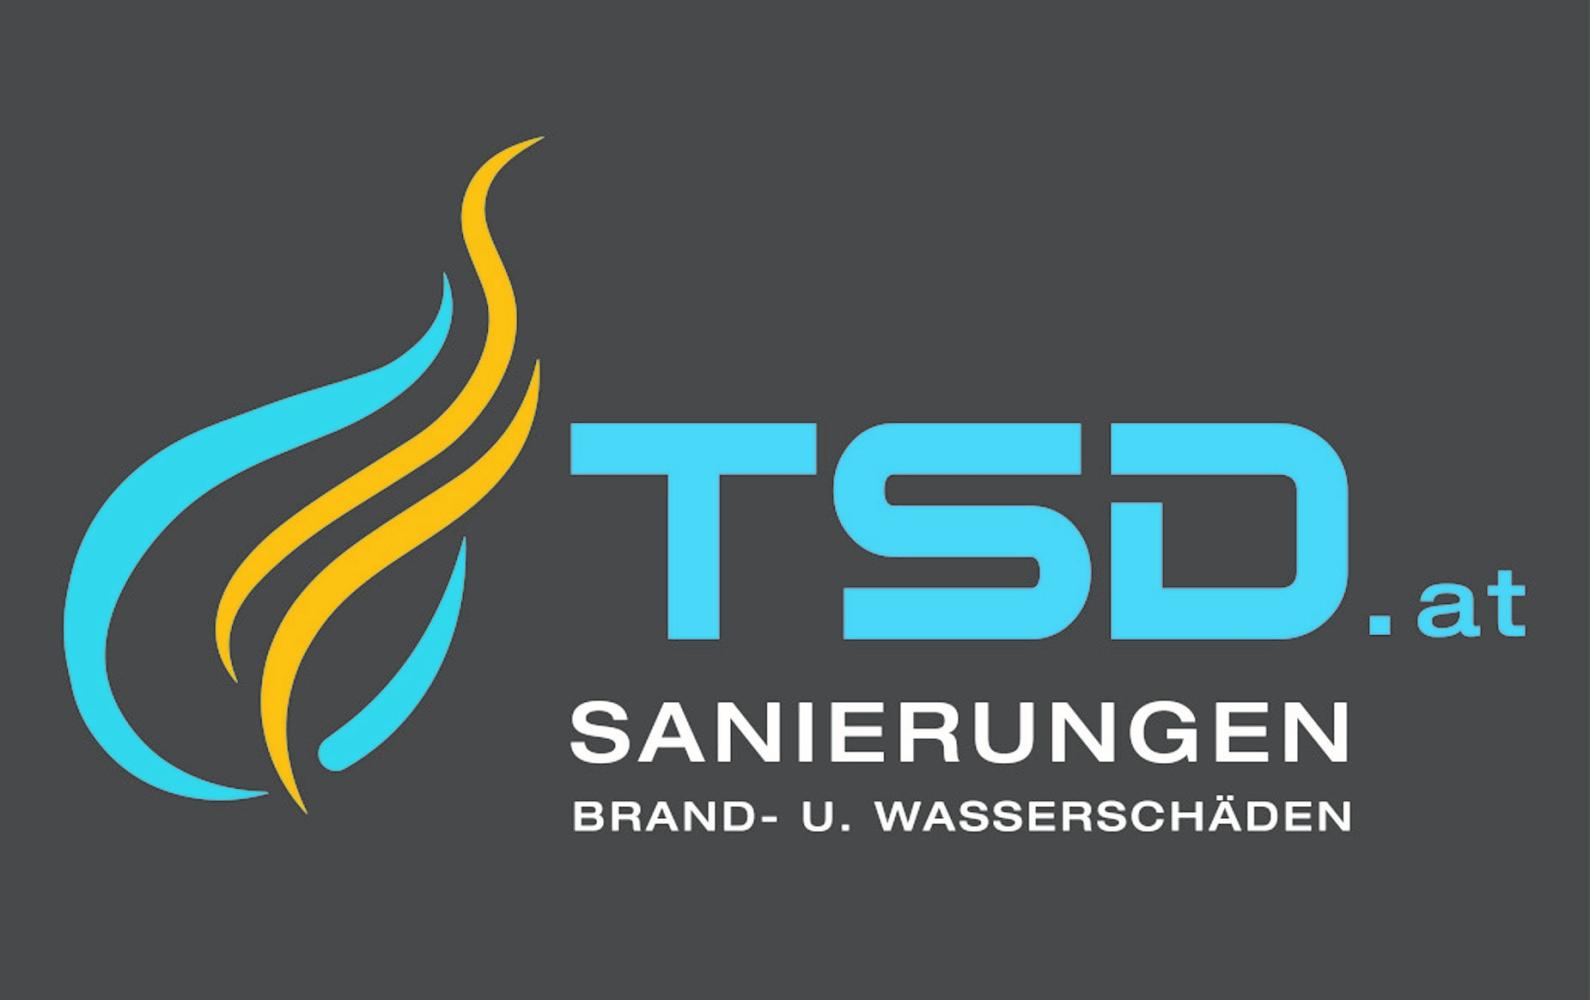 TSD Brand- und Wasserschaden Sanierung Innviertel GmbH & Co KG Headerbild